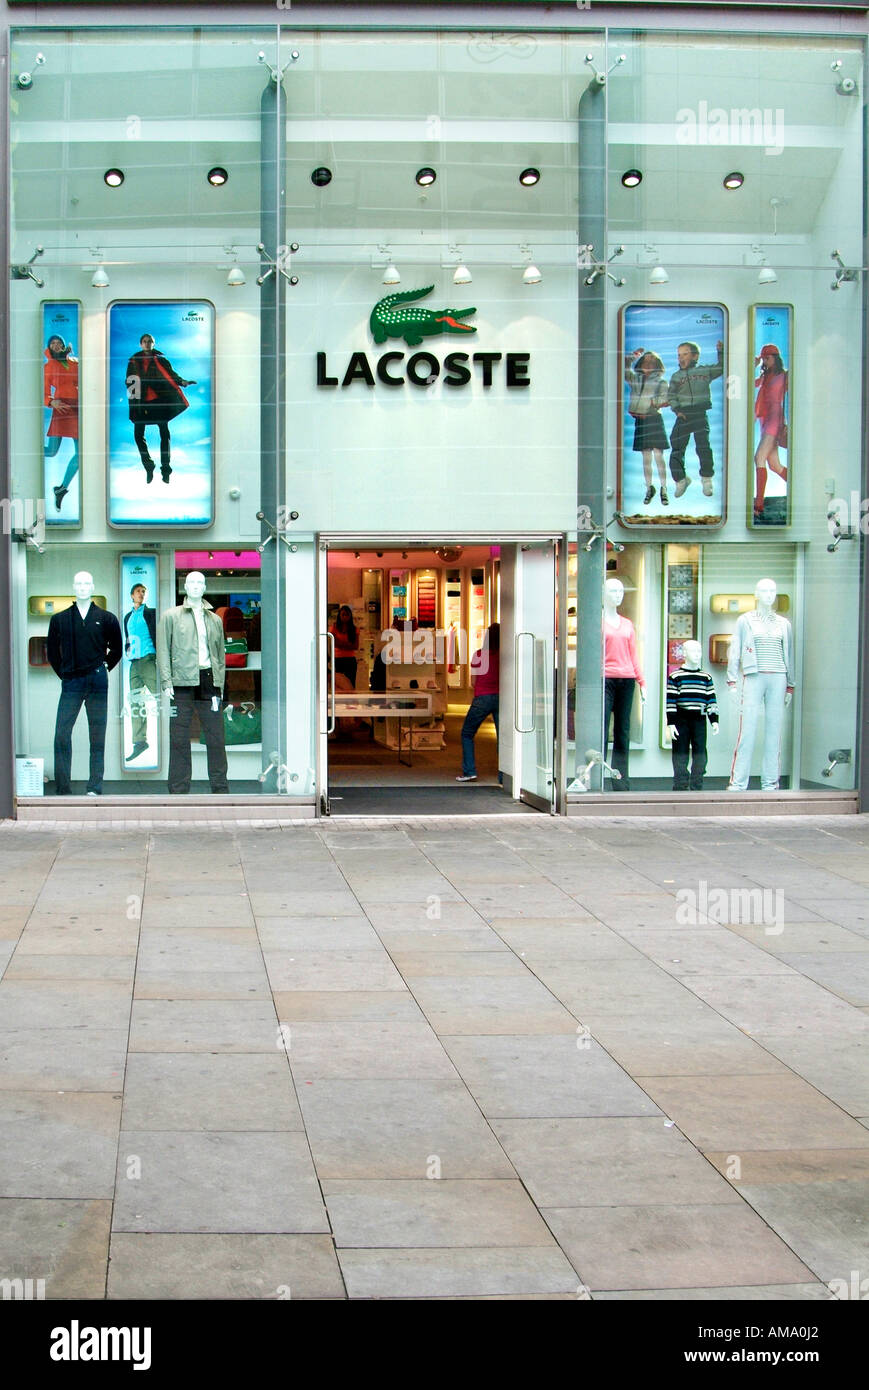 lacoste uk stores, Off 66%, www.iusarecords.com